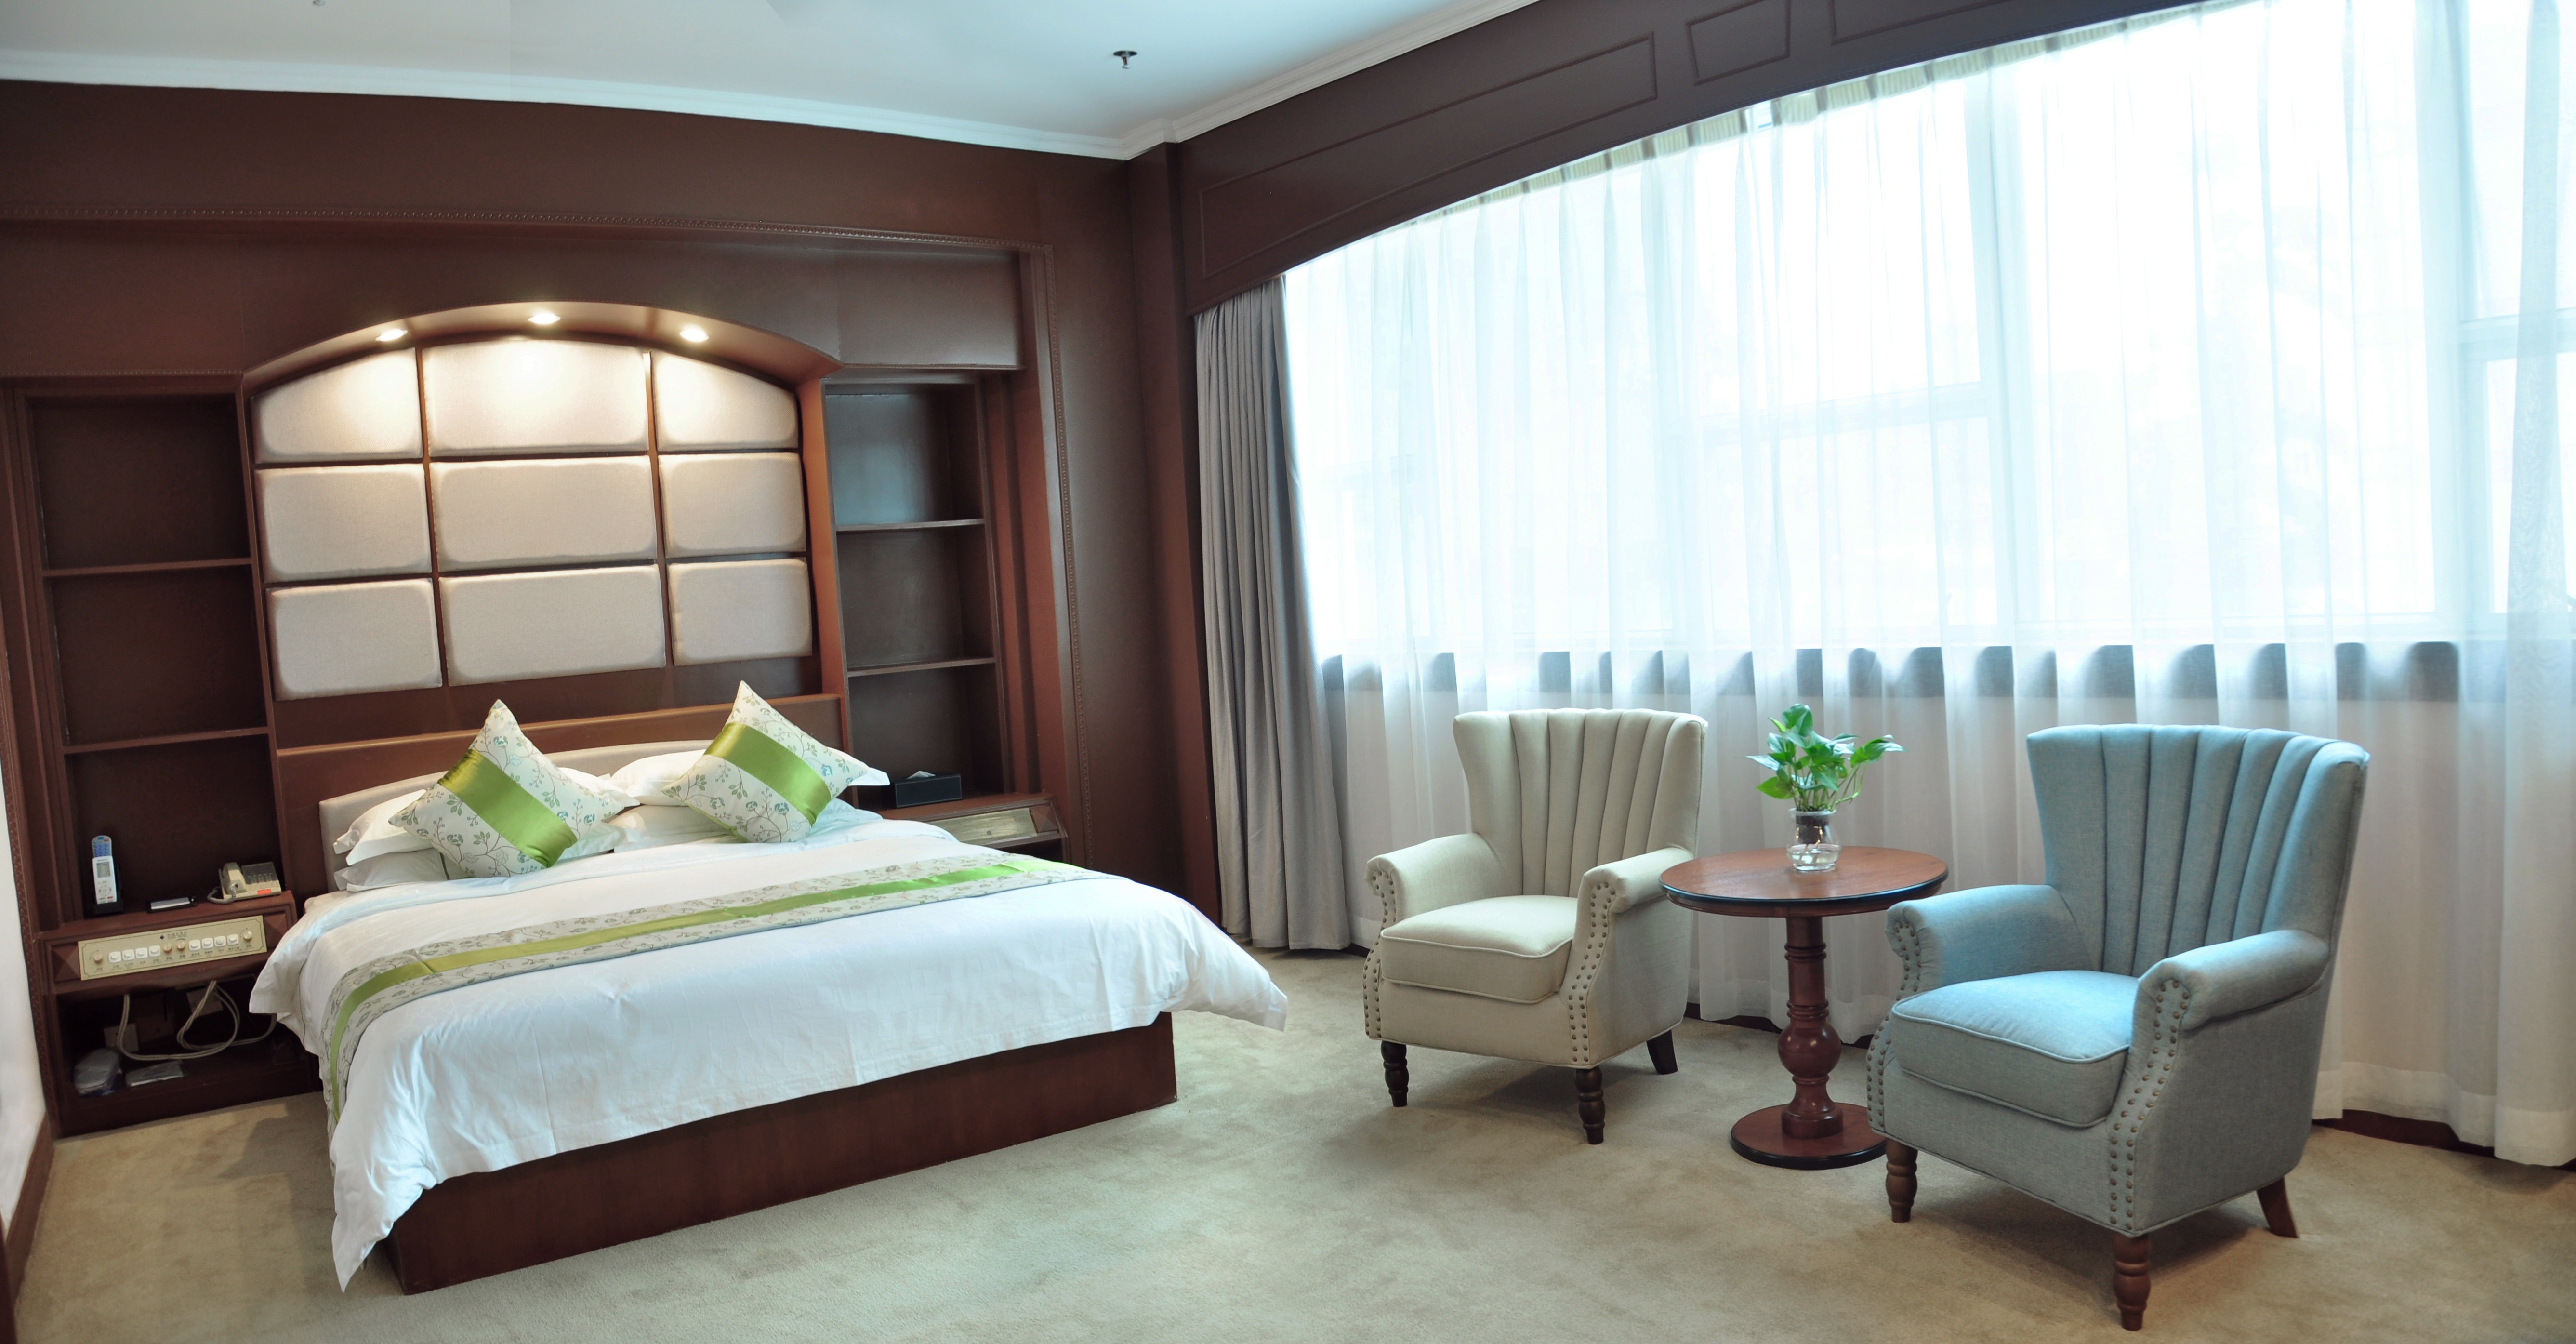 珠海凯迪克酒店位于繁华的吉大cbd商务区,从酒店车行五分钟即可到达